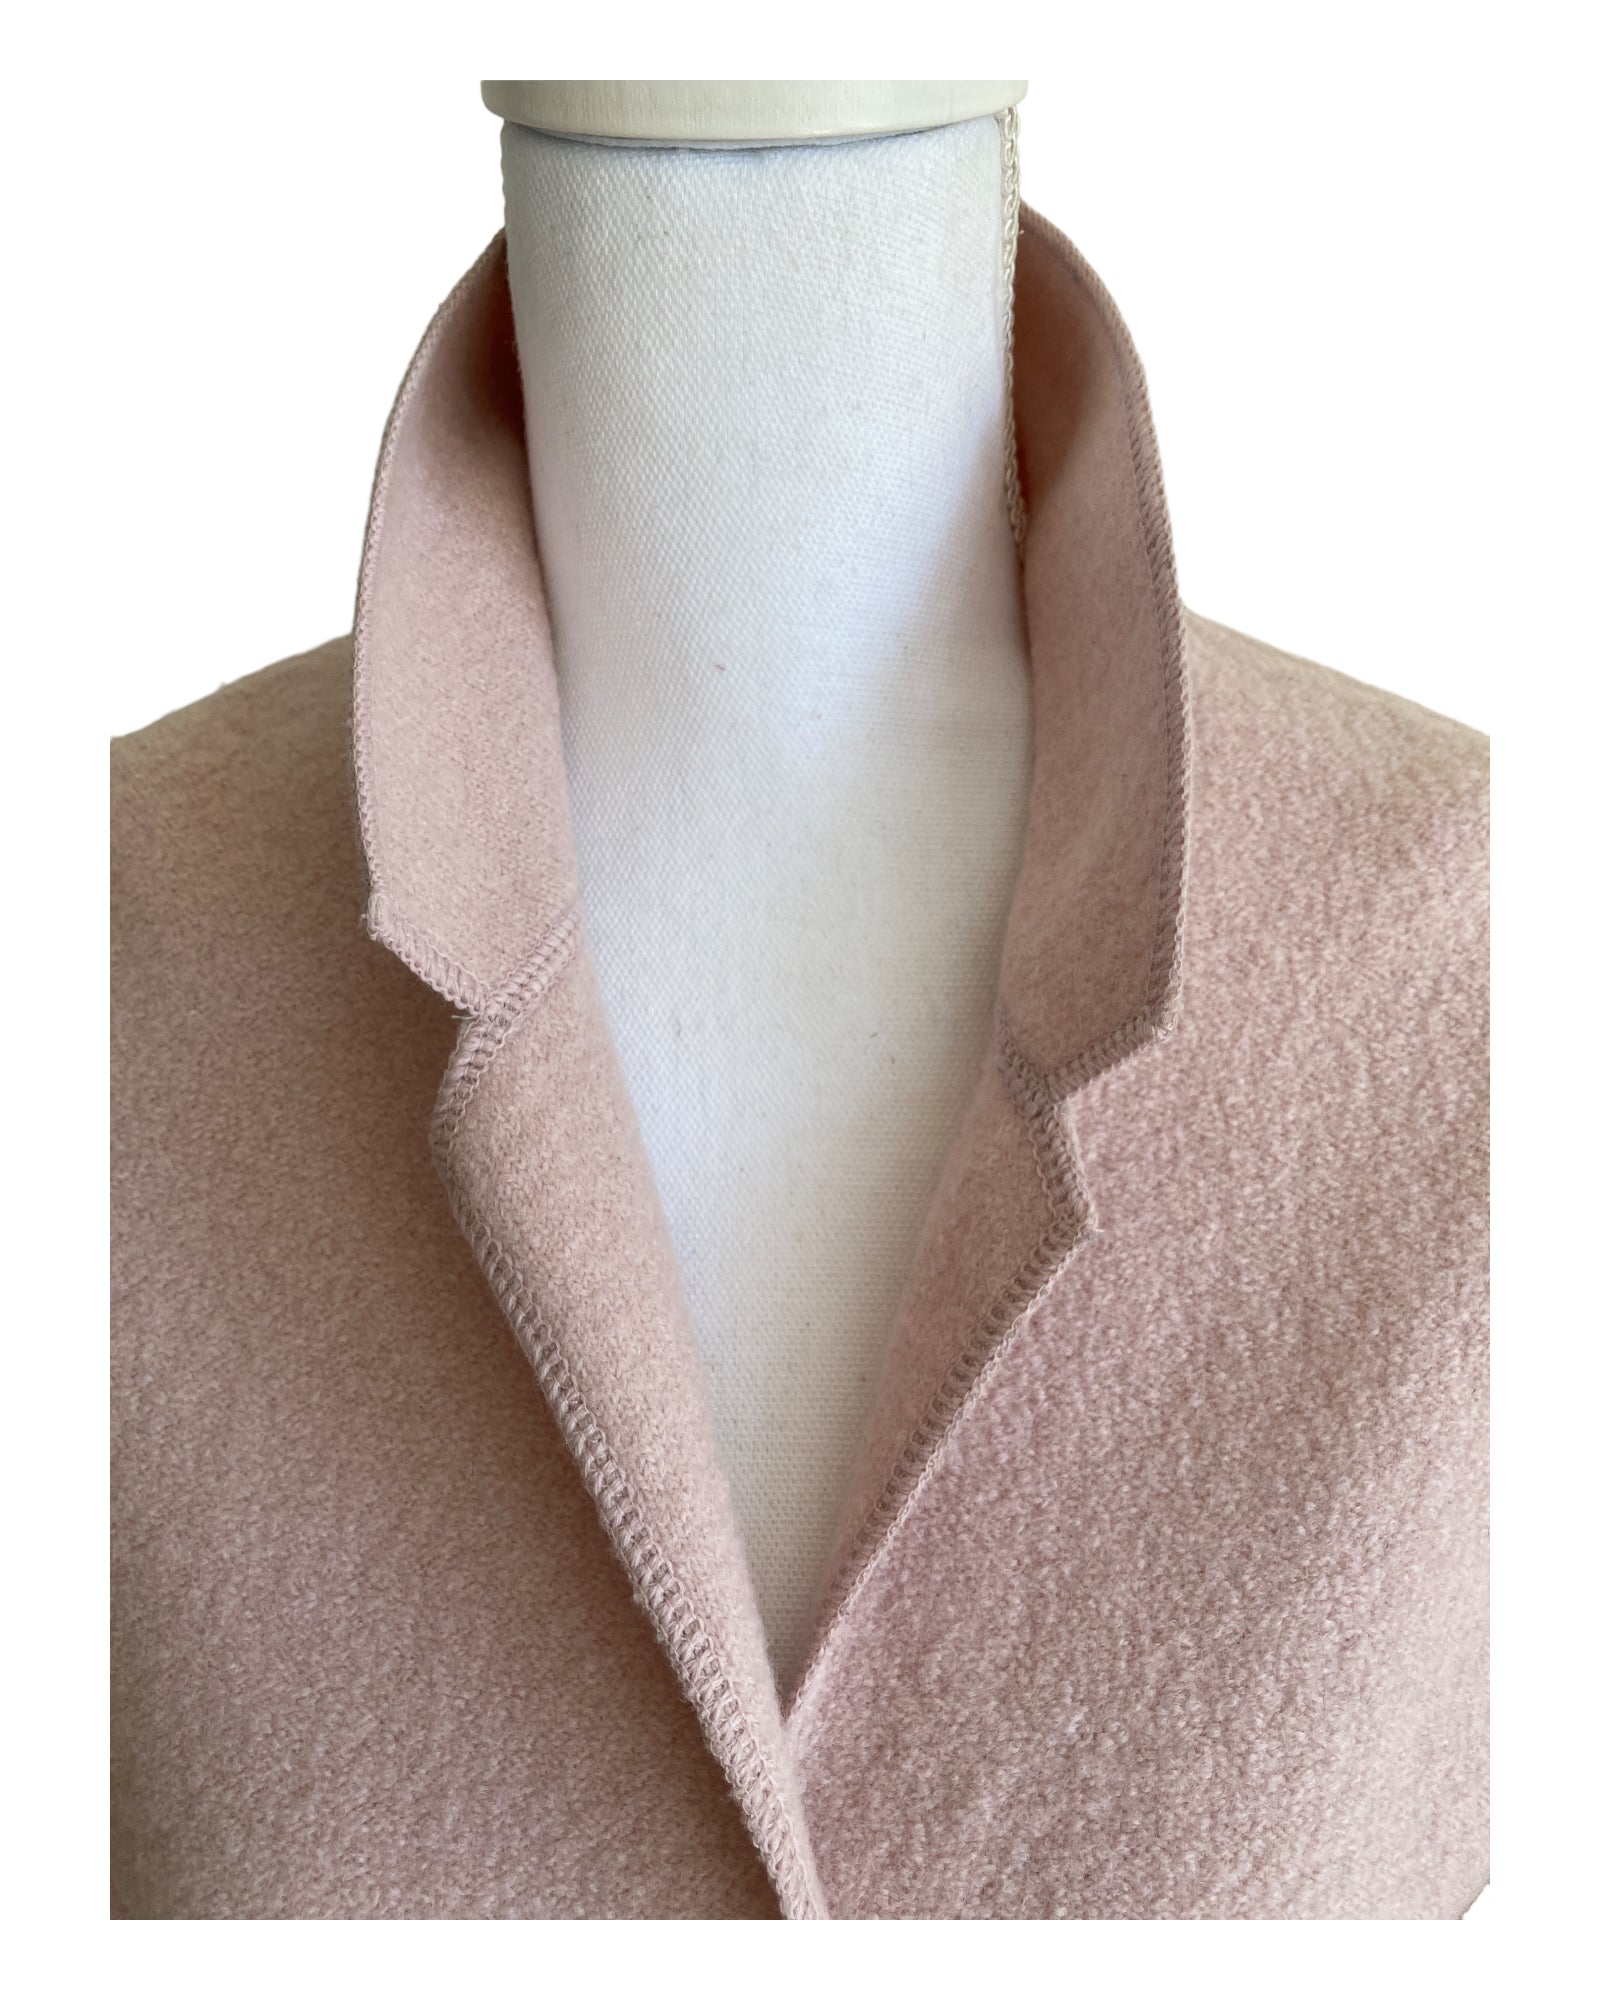 Blush Boiled Wool Jacket, M